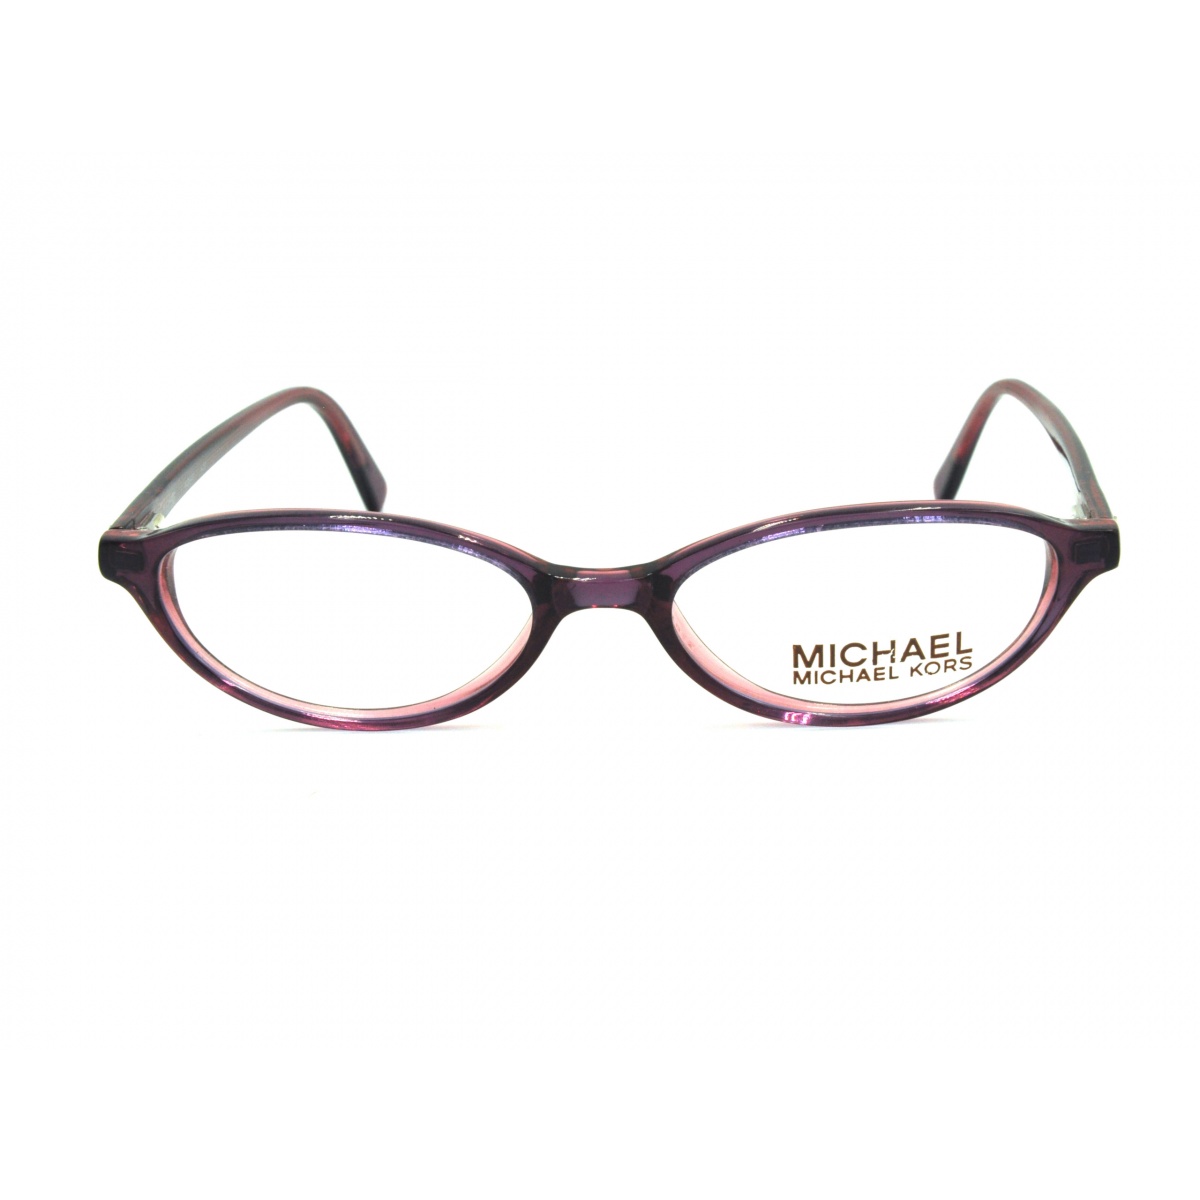 Γυαλιά οράσεως MICHAEL KORS M2640 609 Πειραιάς